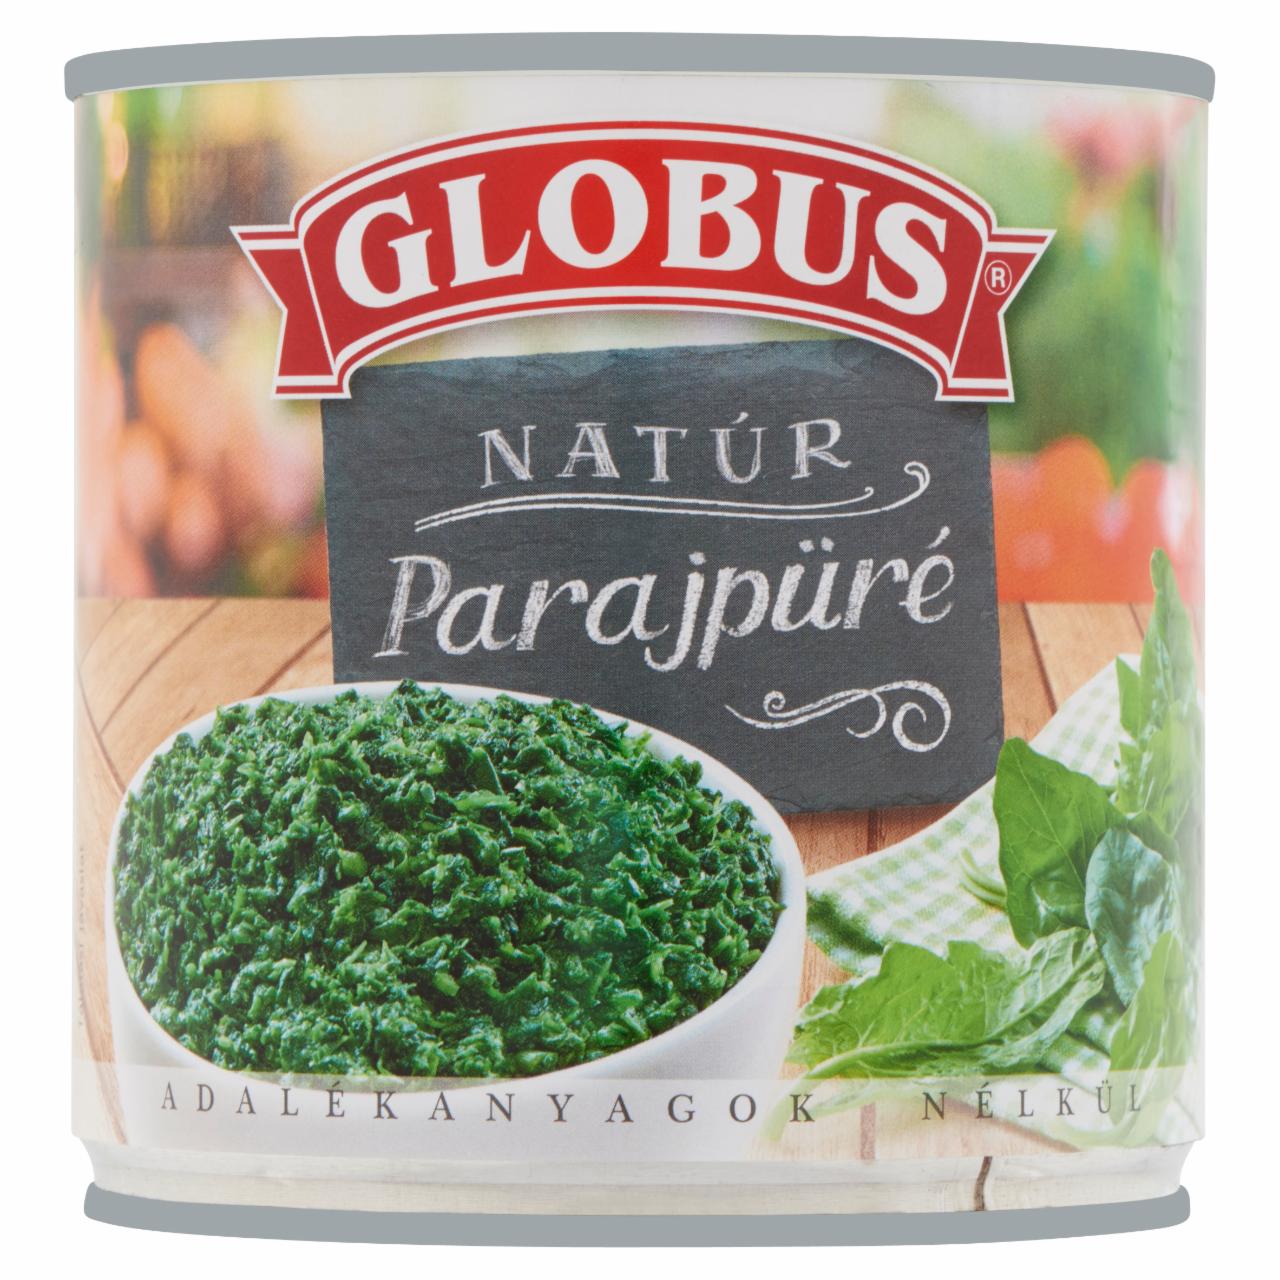 Képek - Globus natúr parajpüré 395 g